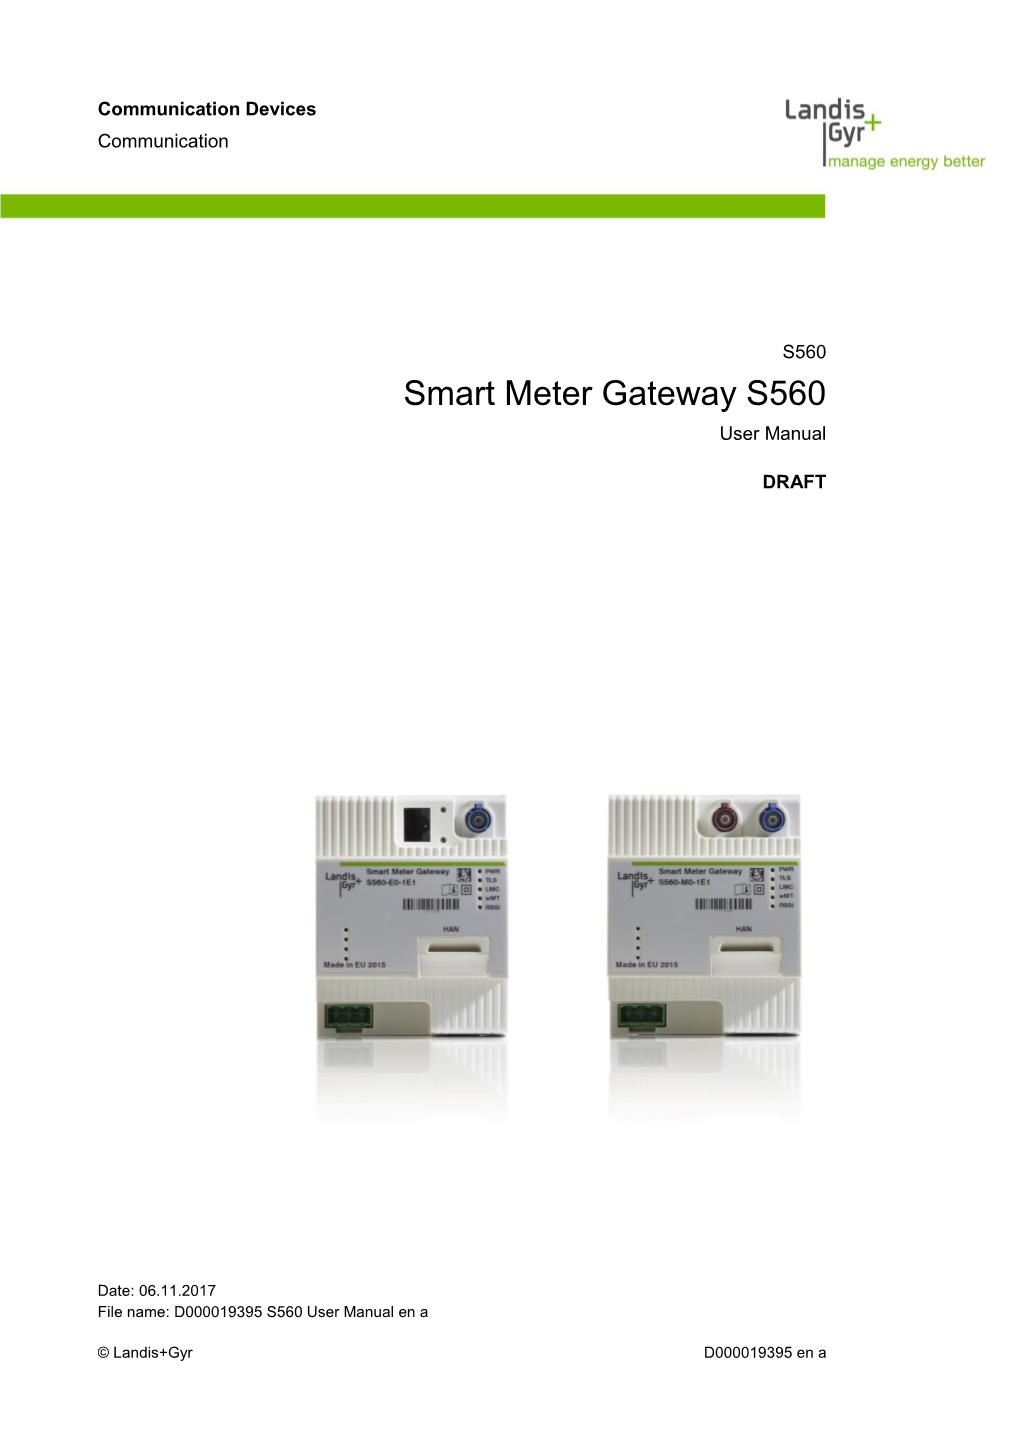 Smart Meter Gateway S560 User Manual